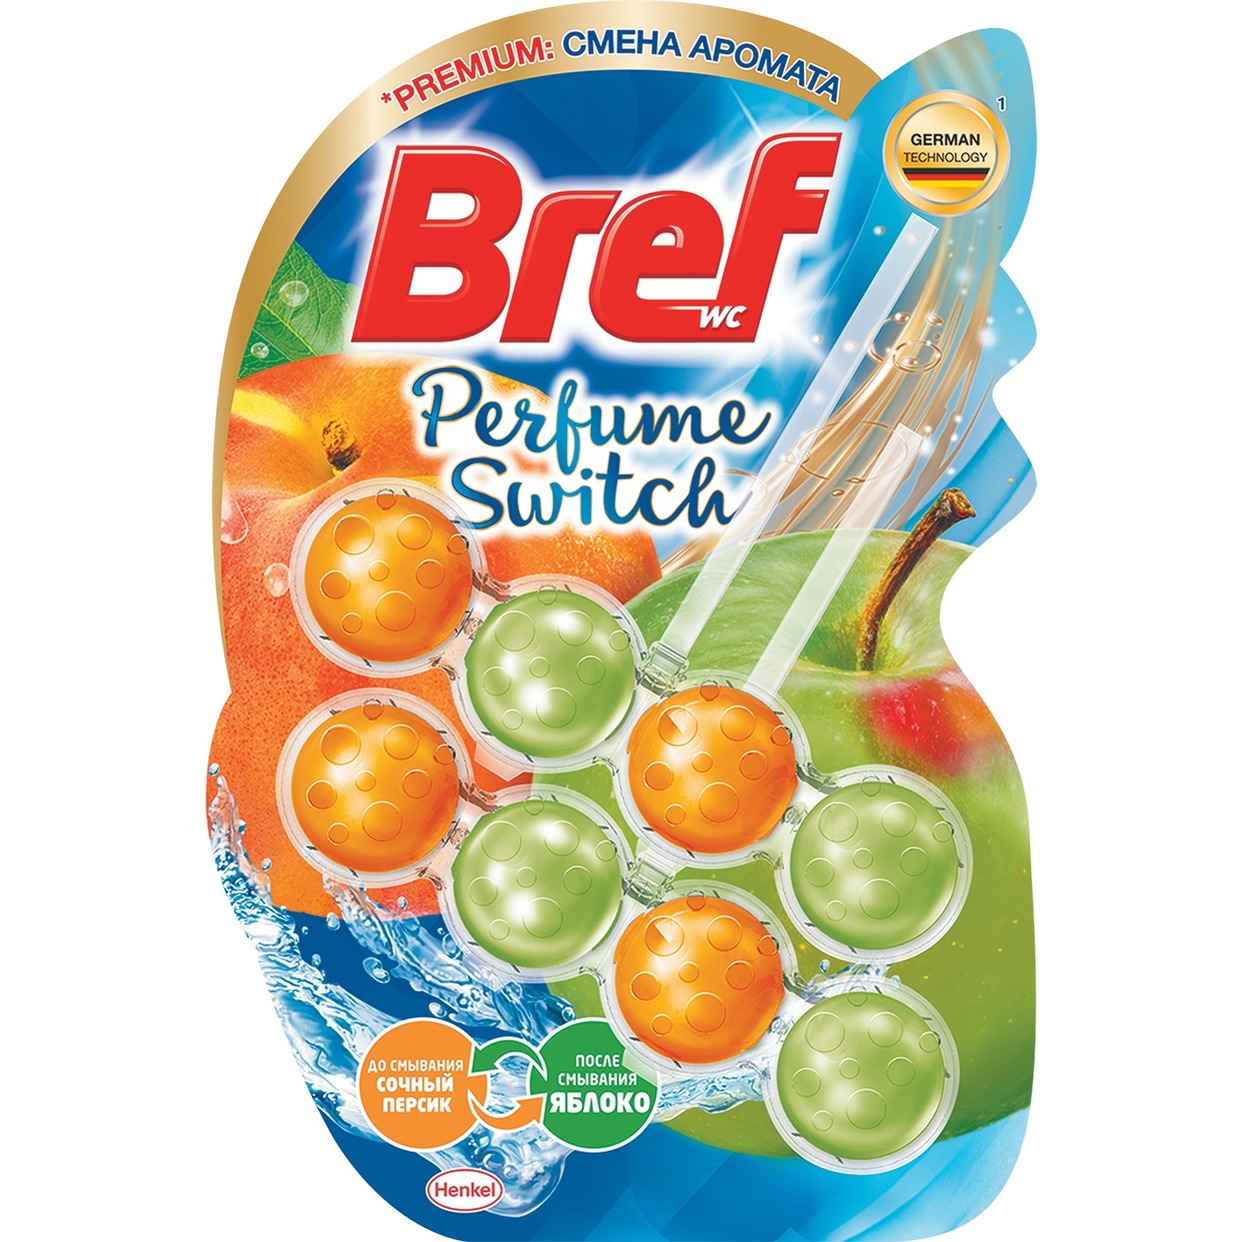 Чистящие средства для унитаза BREF Perfume Switch Сочный персик - яблоко 2*50г по акции в Пятерочке